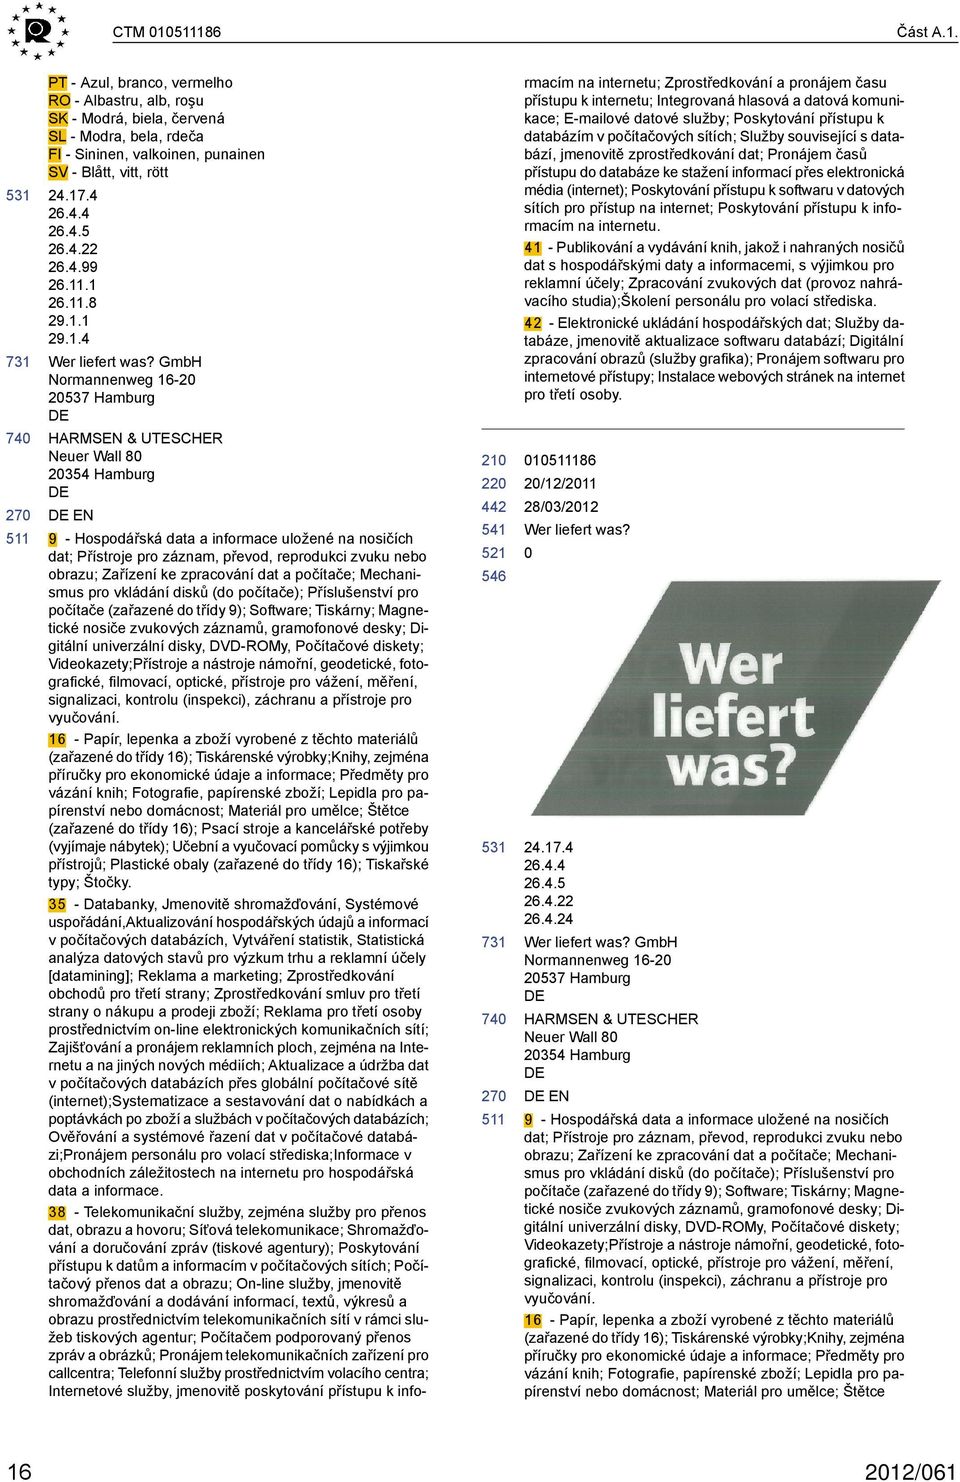 GmbH Normannenweg 16-2 2537 Hamburg HARMSEN & UTCHER Neuer Wall 8 2354 Hamburg EN 9 - Hospodářská data a informace uložené na nosičích dat; Přístroje pro záznam, převod, reprodukci zvuku nebo obrazu;